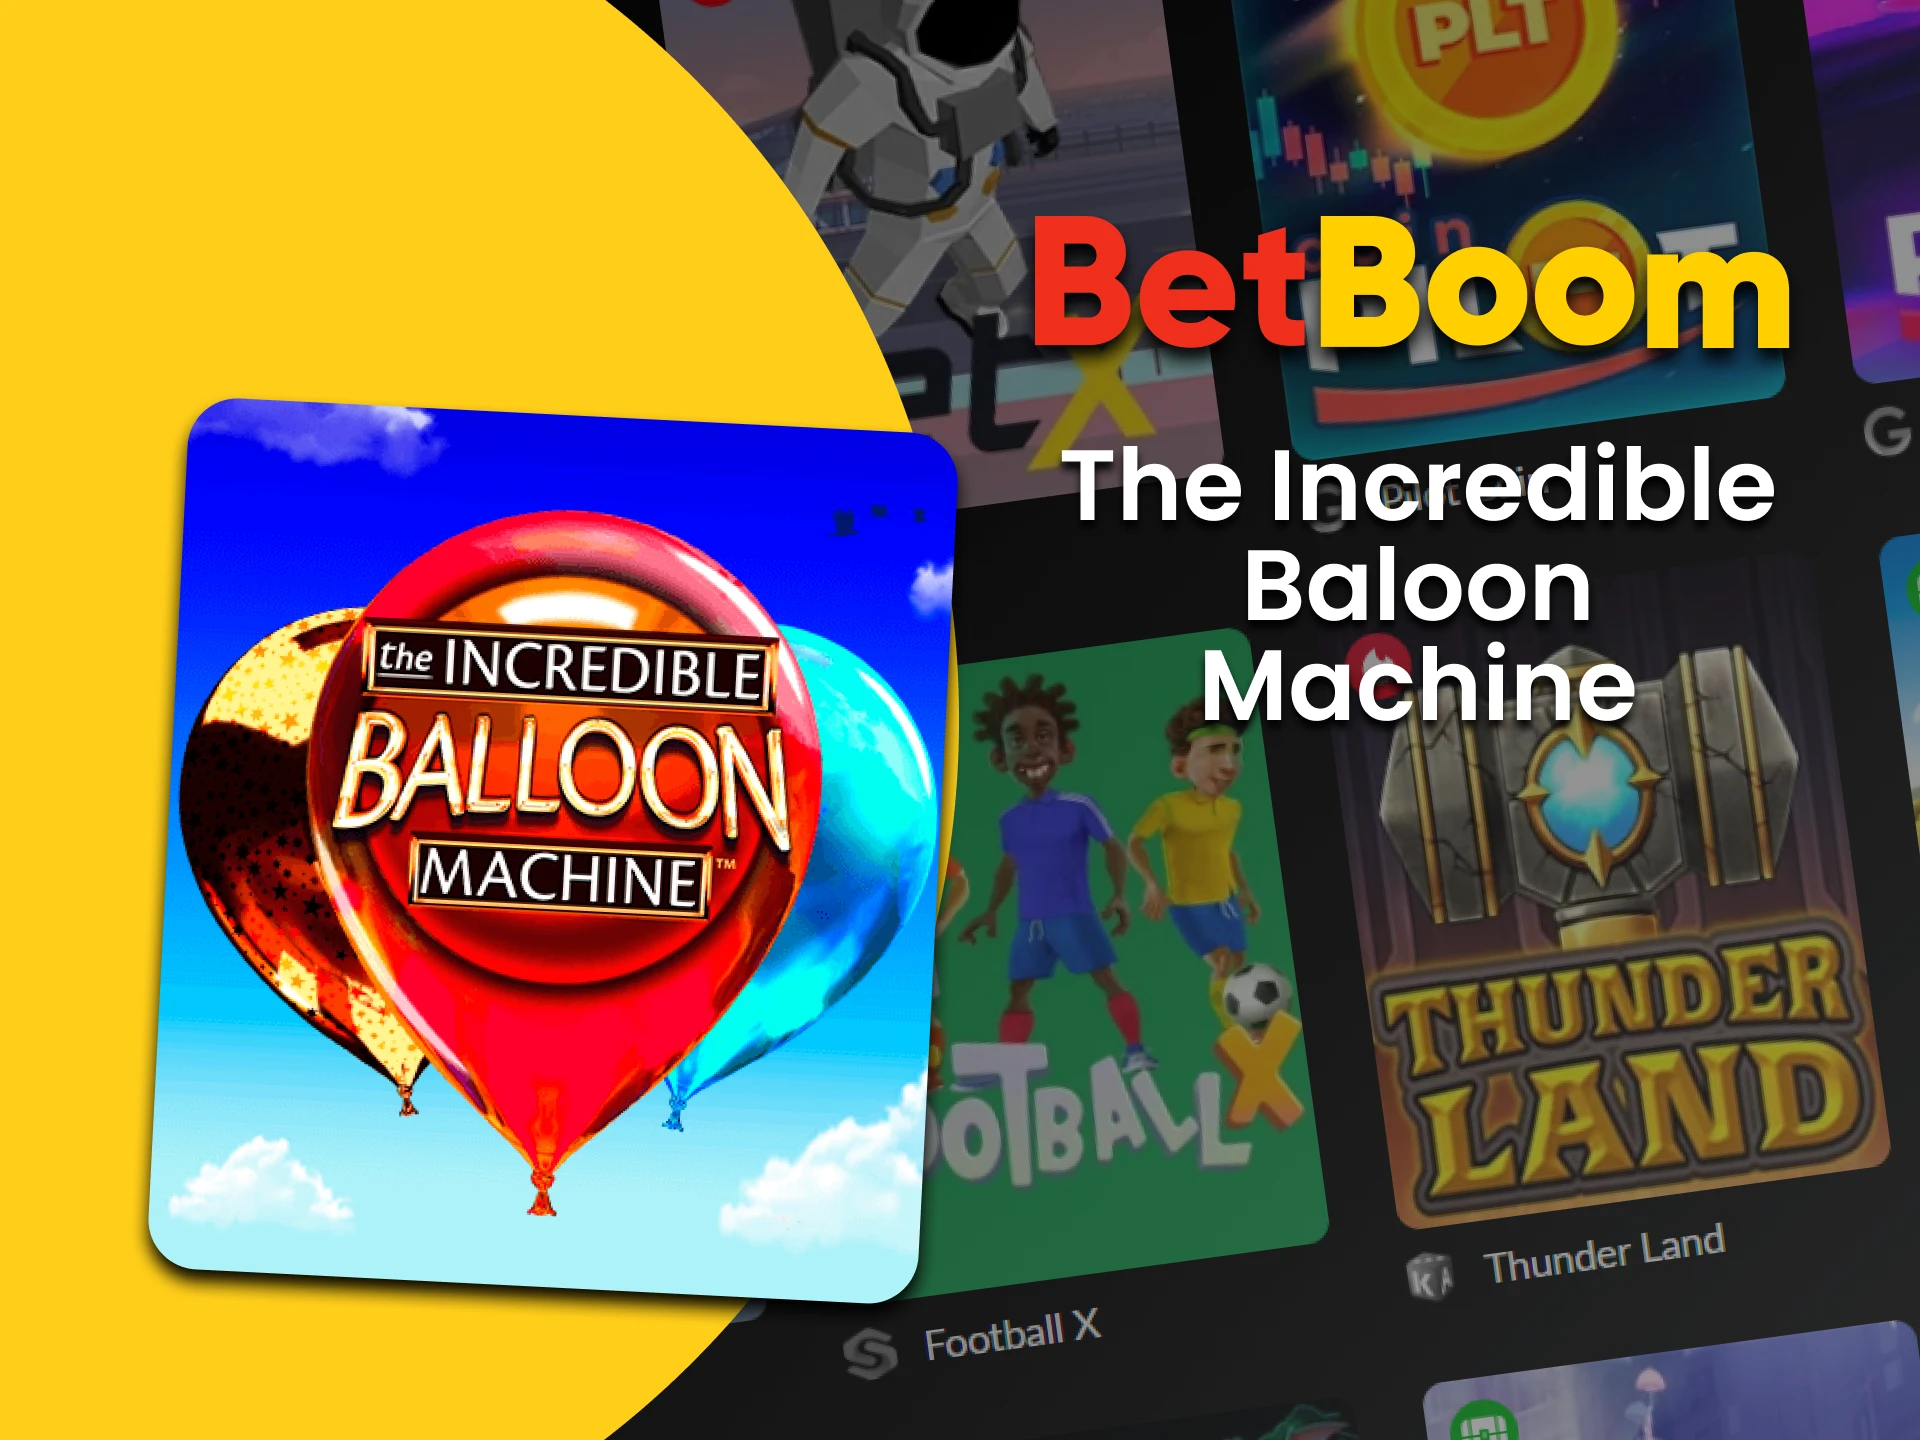 Jogue The Incredible Baloon Machine na seção Crash do BetBoom.